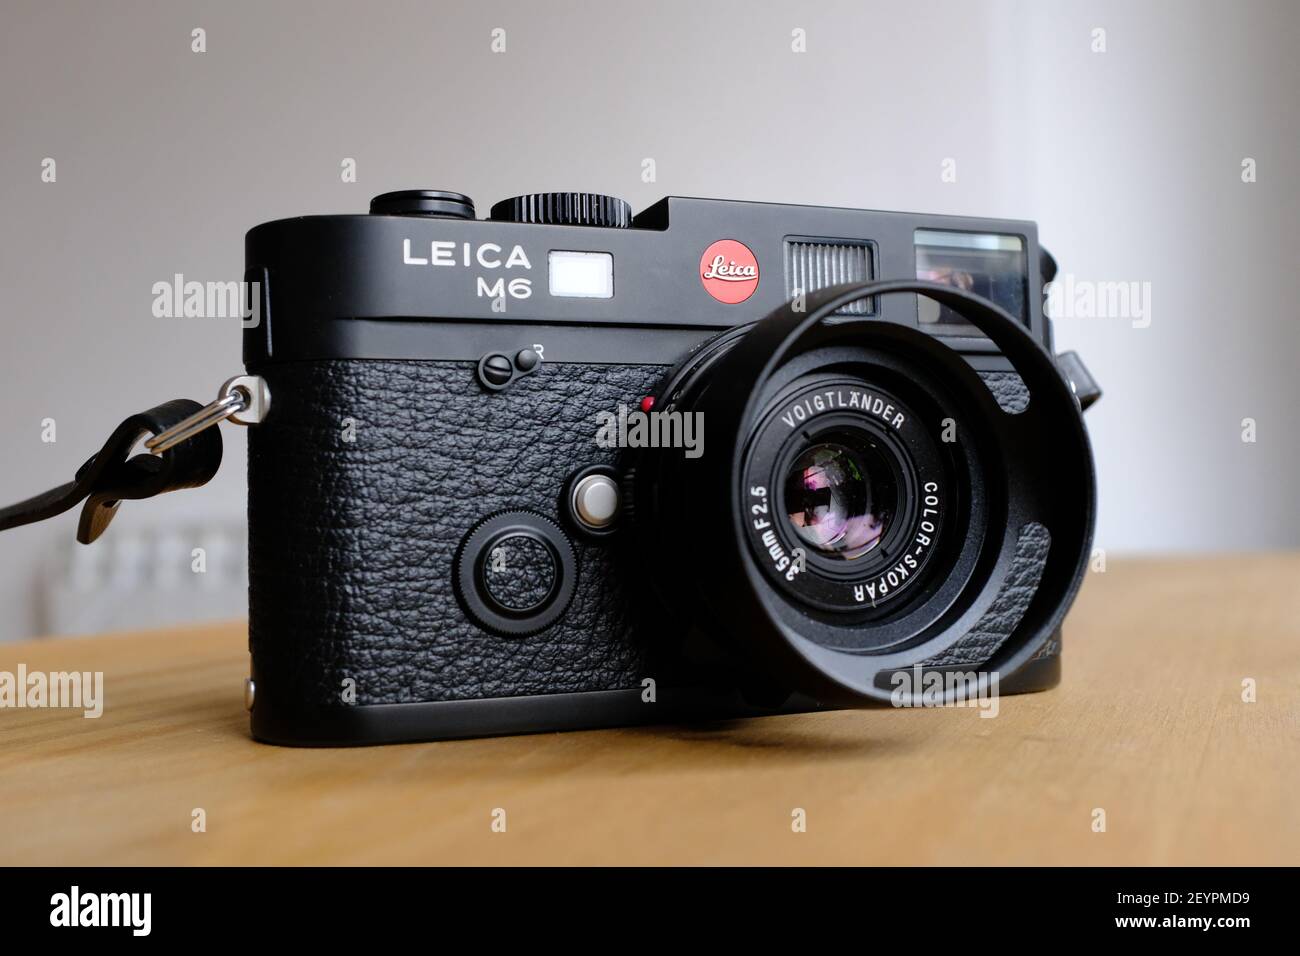 LONDRES - 6th DE MARZO de 2021: Una cámara de película analógica Leica M6 TTL modelo negro con una lente Voigtlander 35mm sobre una superficie de trabajo de madera. Foto de stock